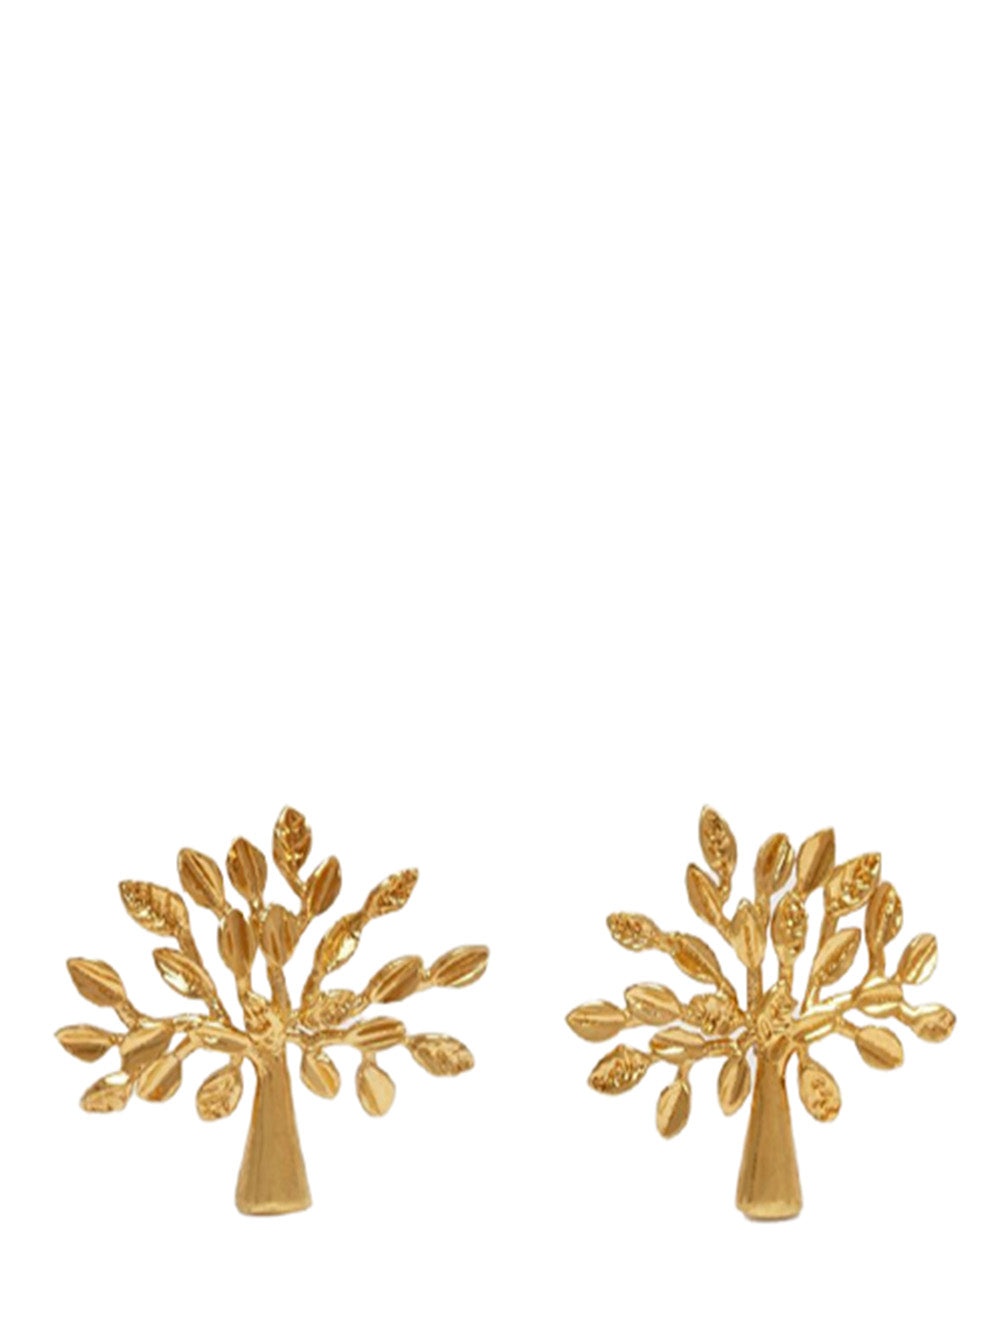 Mulberry Tree Earrings Brass Metal (Gold) - 1